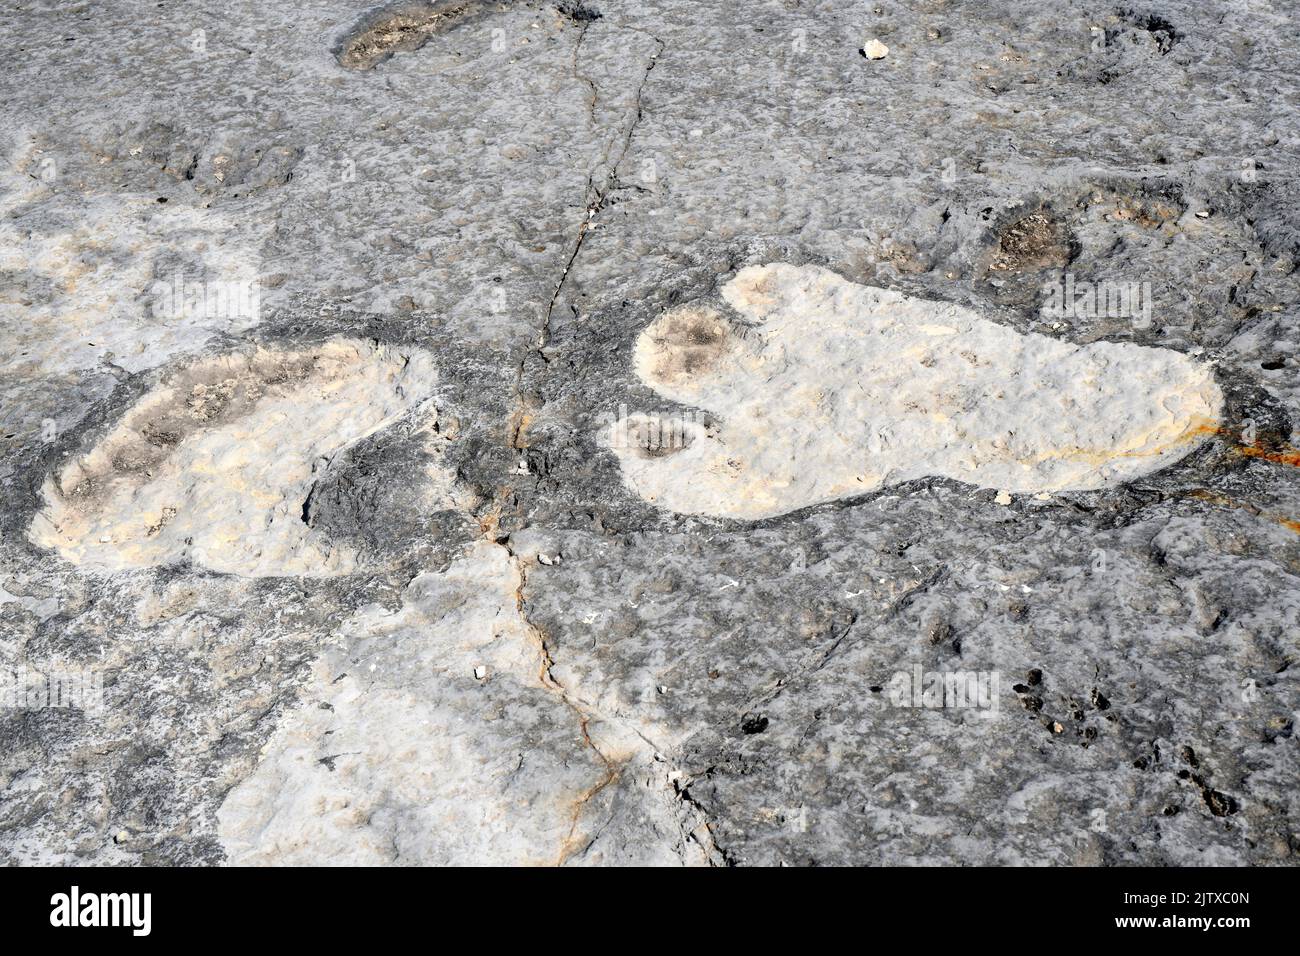 Sauropoden-Dinosaurier-Ichniten (Fußabdrücke) aus dem Mittleren Jura, vor 168 Ma. Druck der vorderen und hinteren Pfoten. Dieses Foto wurde in Pedreira do aufgenommen Stockfoto